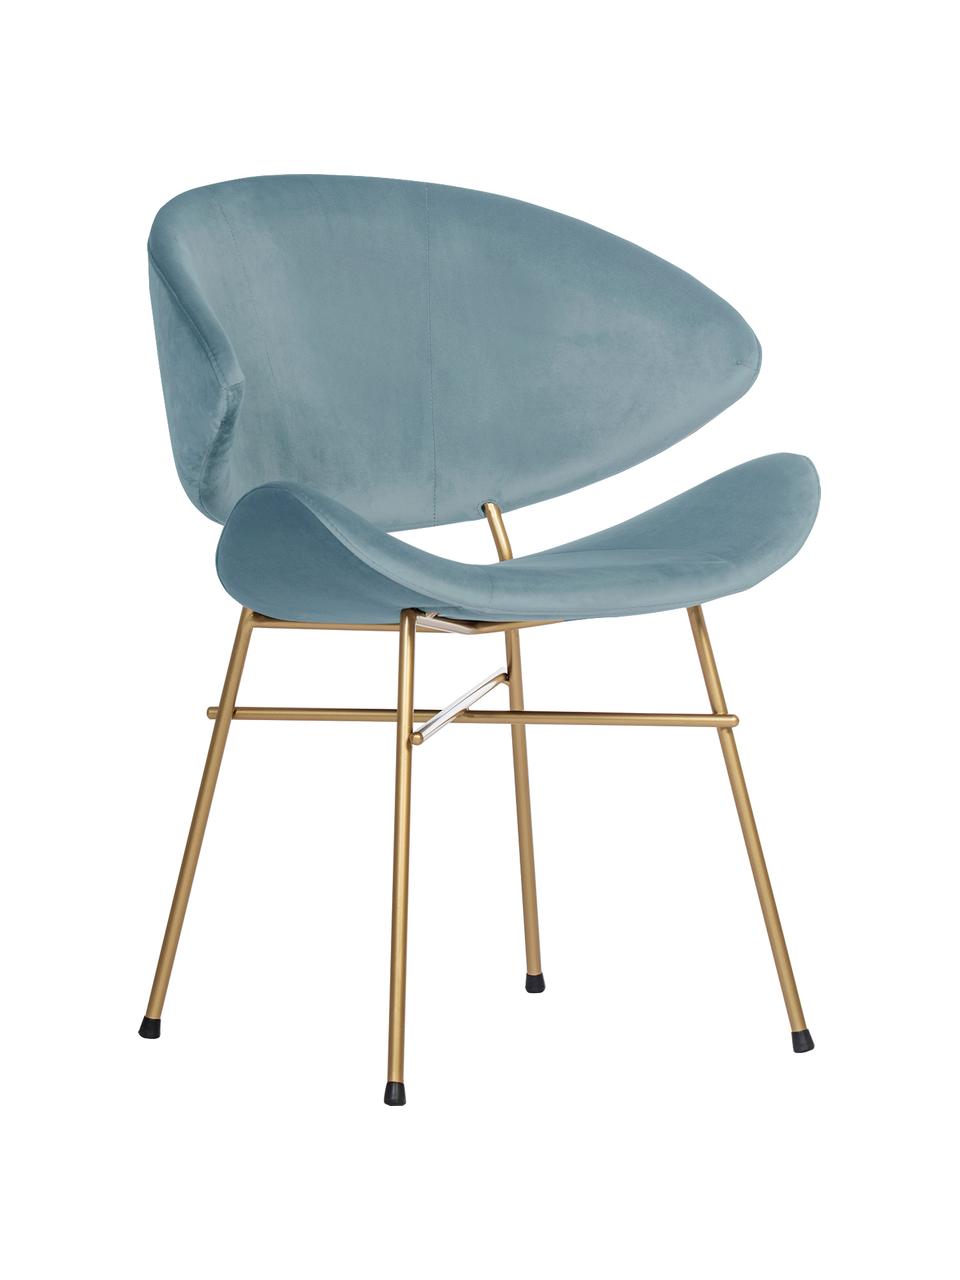 Krzesło tapicerowane z weluru Cheri, Tapicerka: 100% poliester (welur), w, Stelaż: stal malowana proszkowo, Jasny niebieski, odcienie mosiądzu, S 57 x G 55 cm